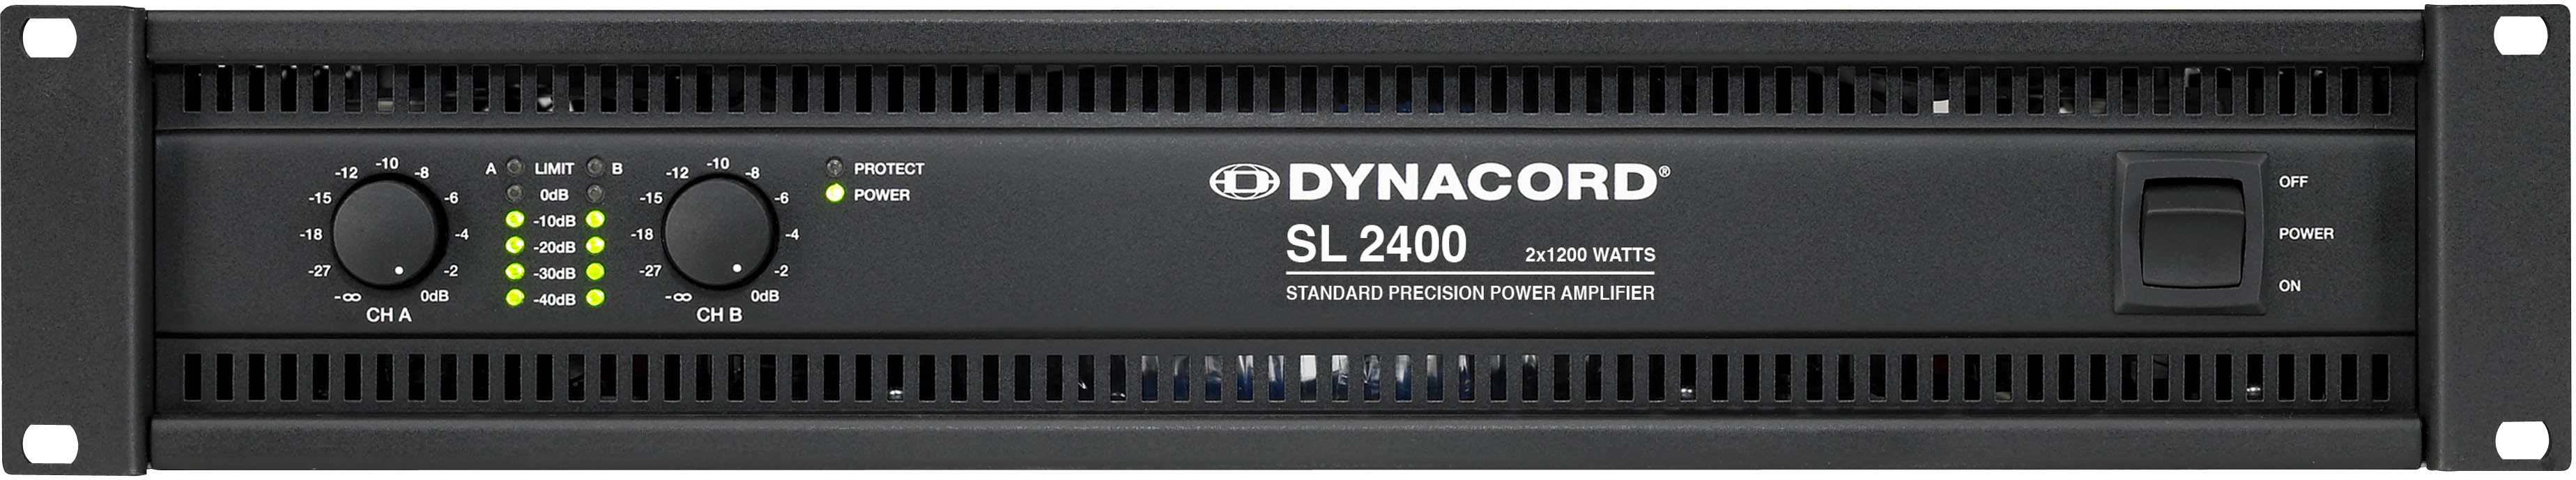 DYNACORD - SL 2400 آمپلی فایر